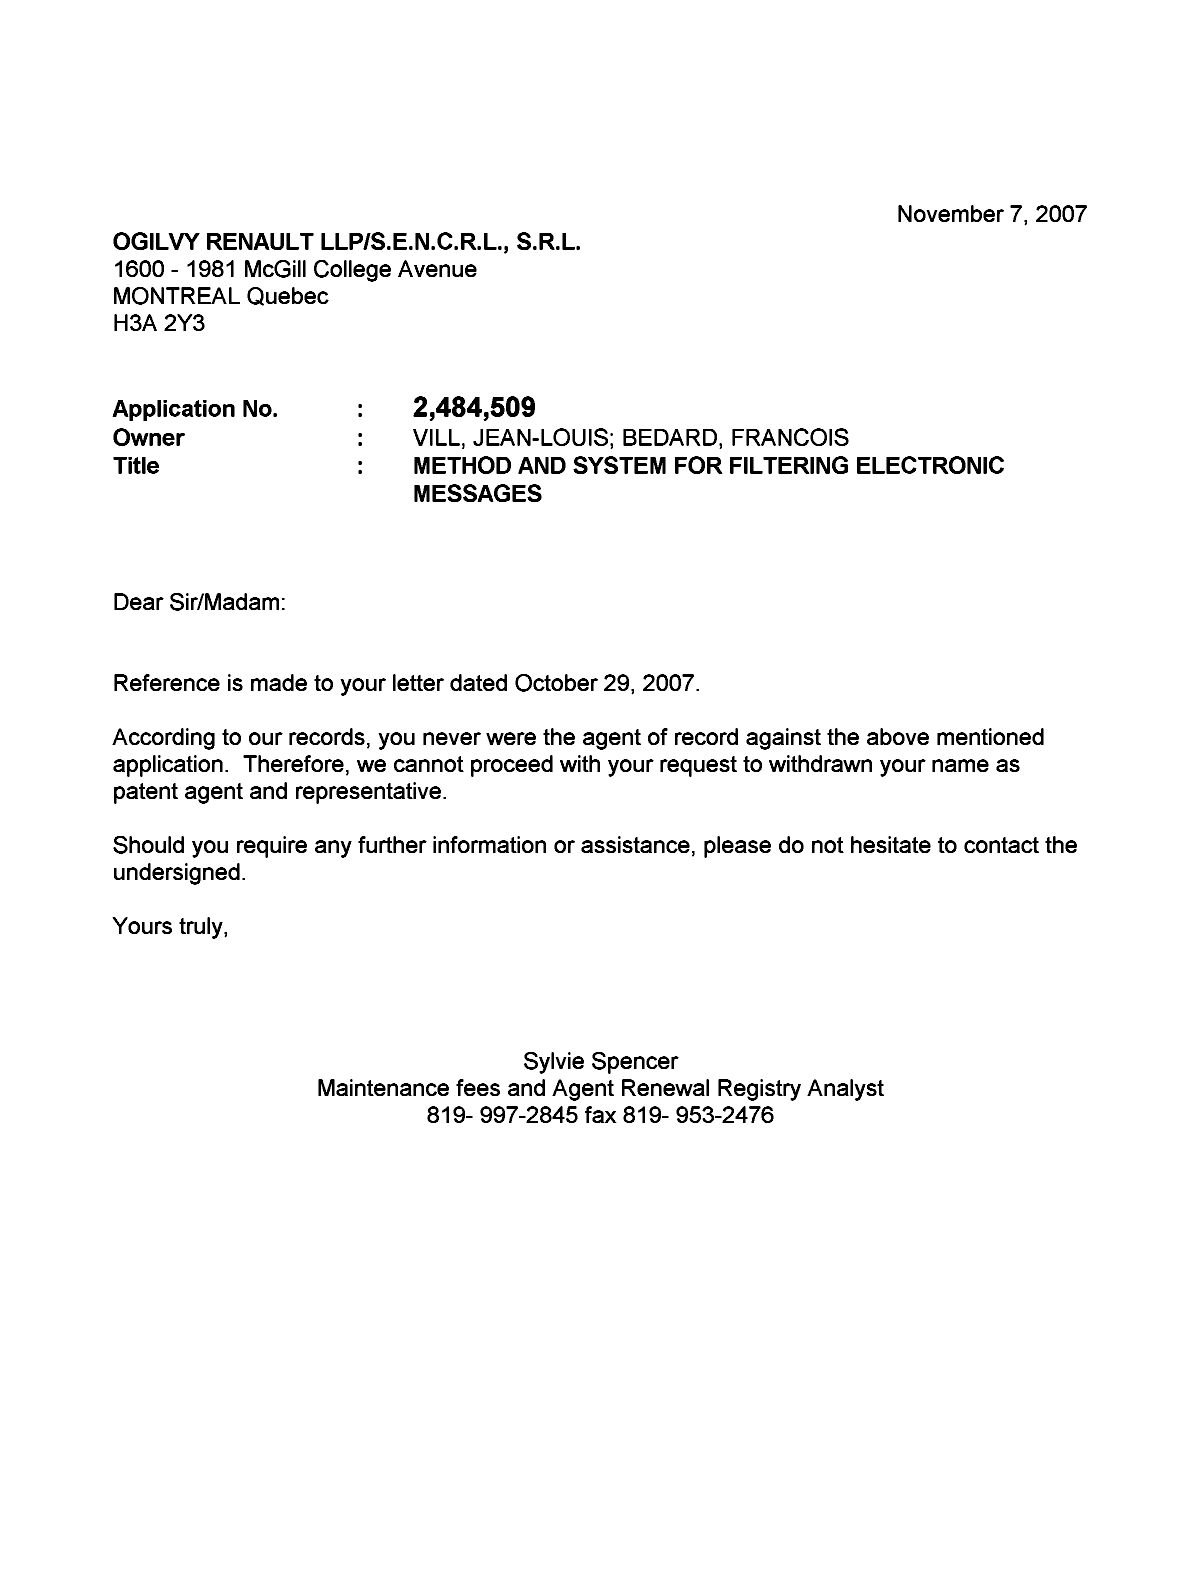 Document de brevet canadien 2484509. Correspondance 20071107. Image 1 de 1